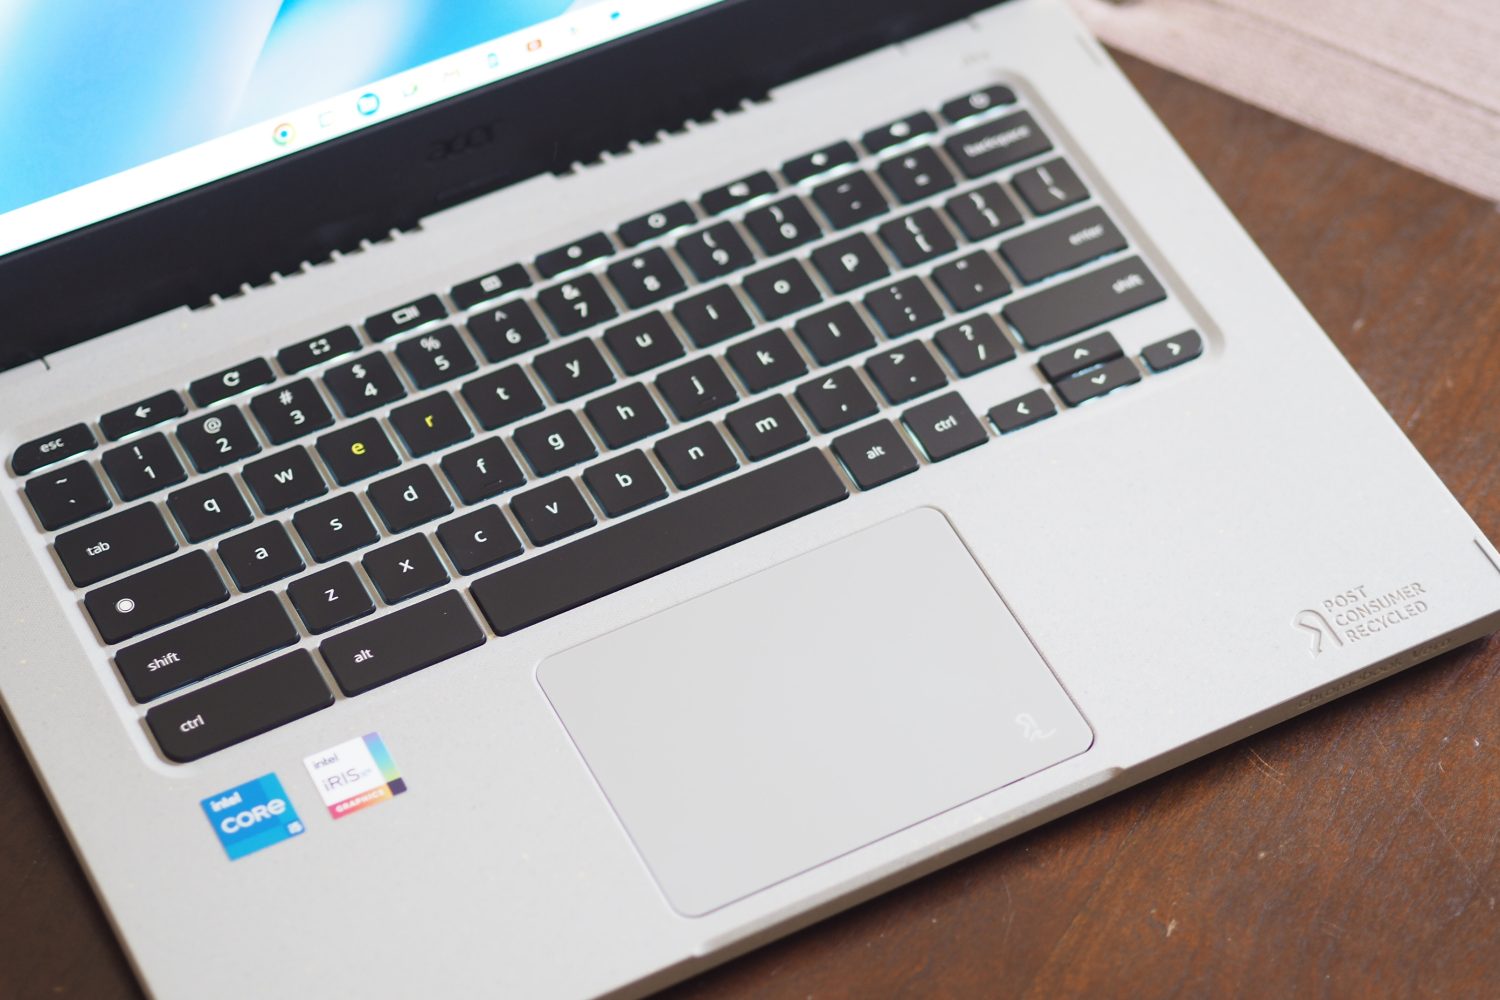 Vista superior do Acer Chromebook Vero 514 mostrando o teclado e o touchpad.